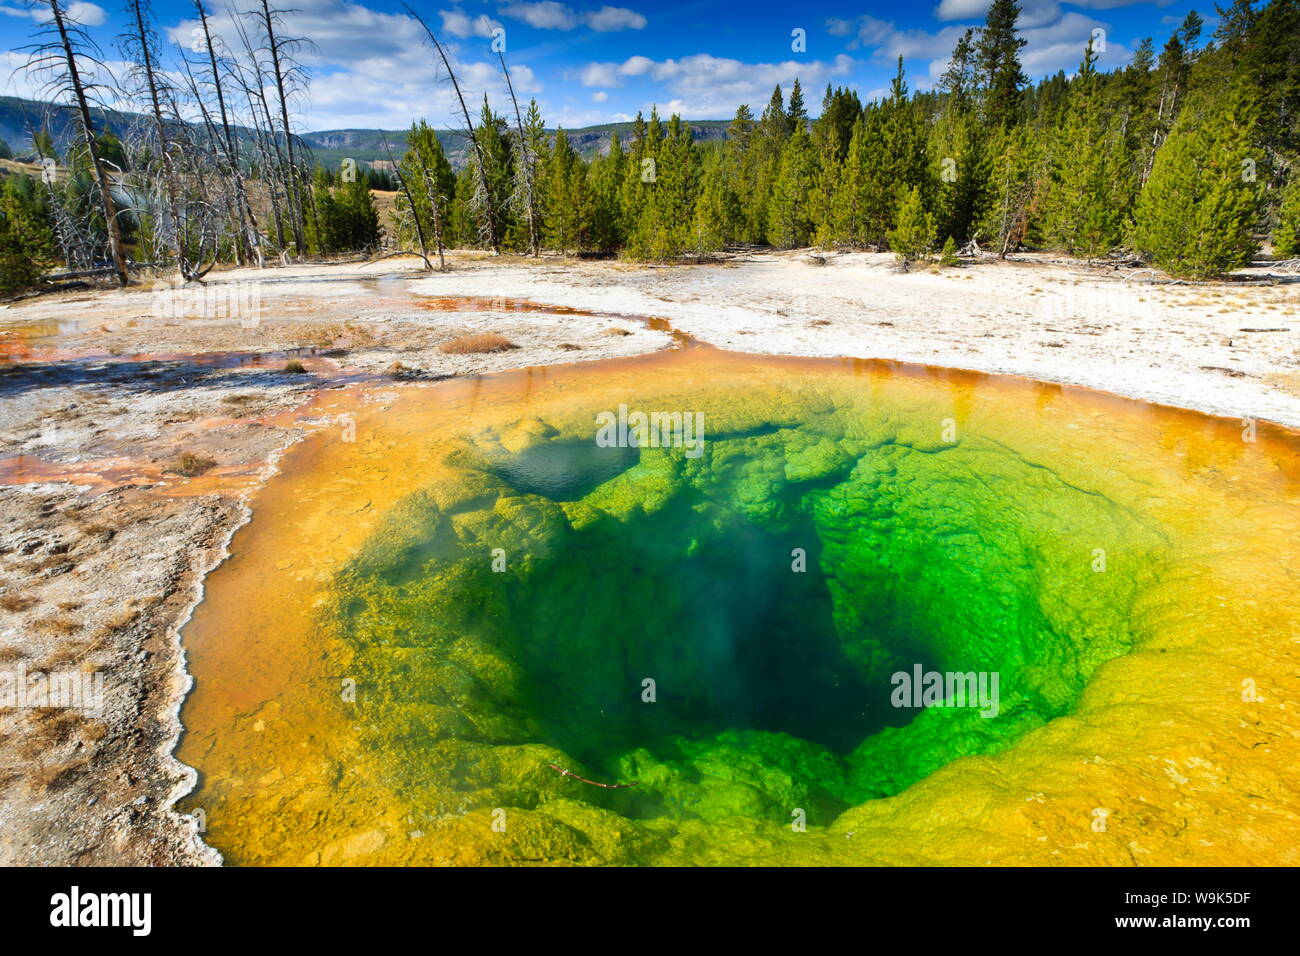 Gloire du matin et piscine, entoure le parc national de Yellowstone, UNESCO World Heritage Site, Wyoming, États-Unis d'Amérique, Amérique du Nord Banque D'Images